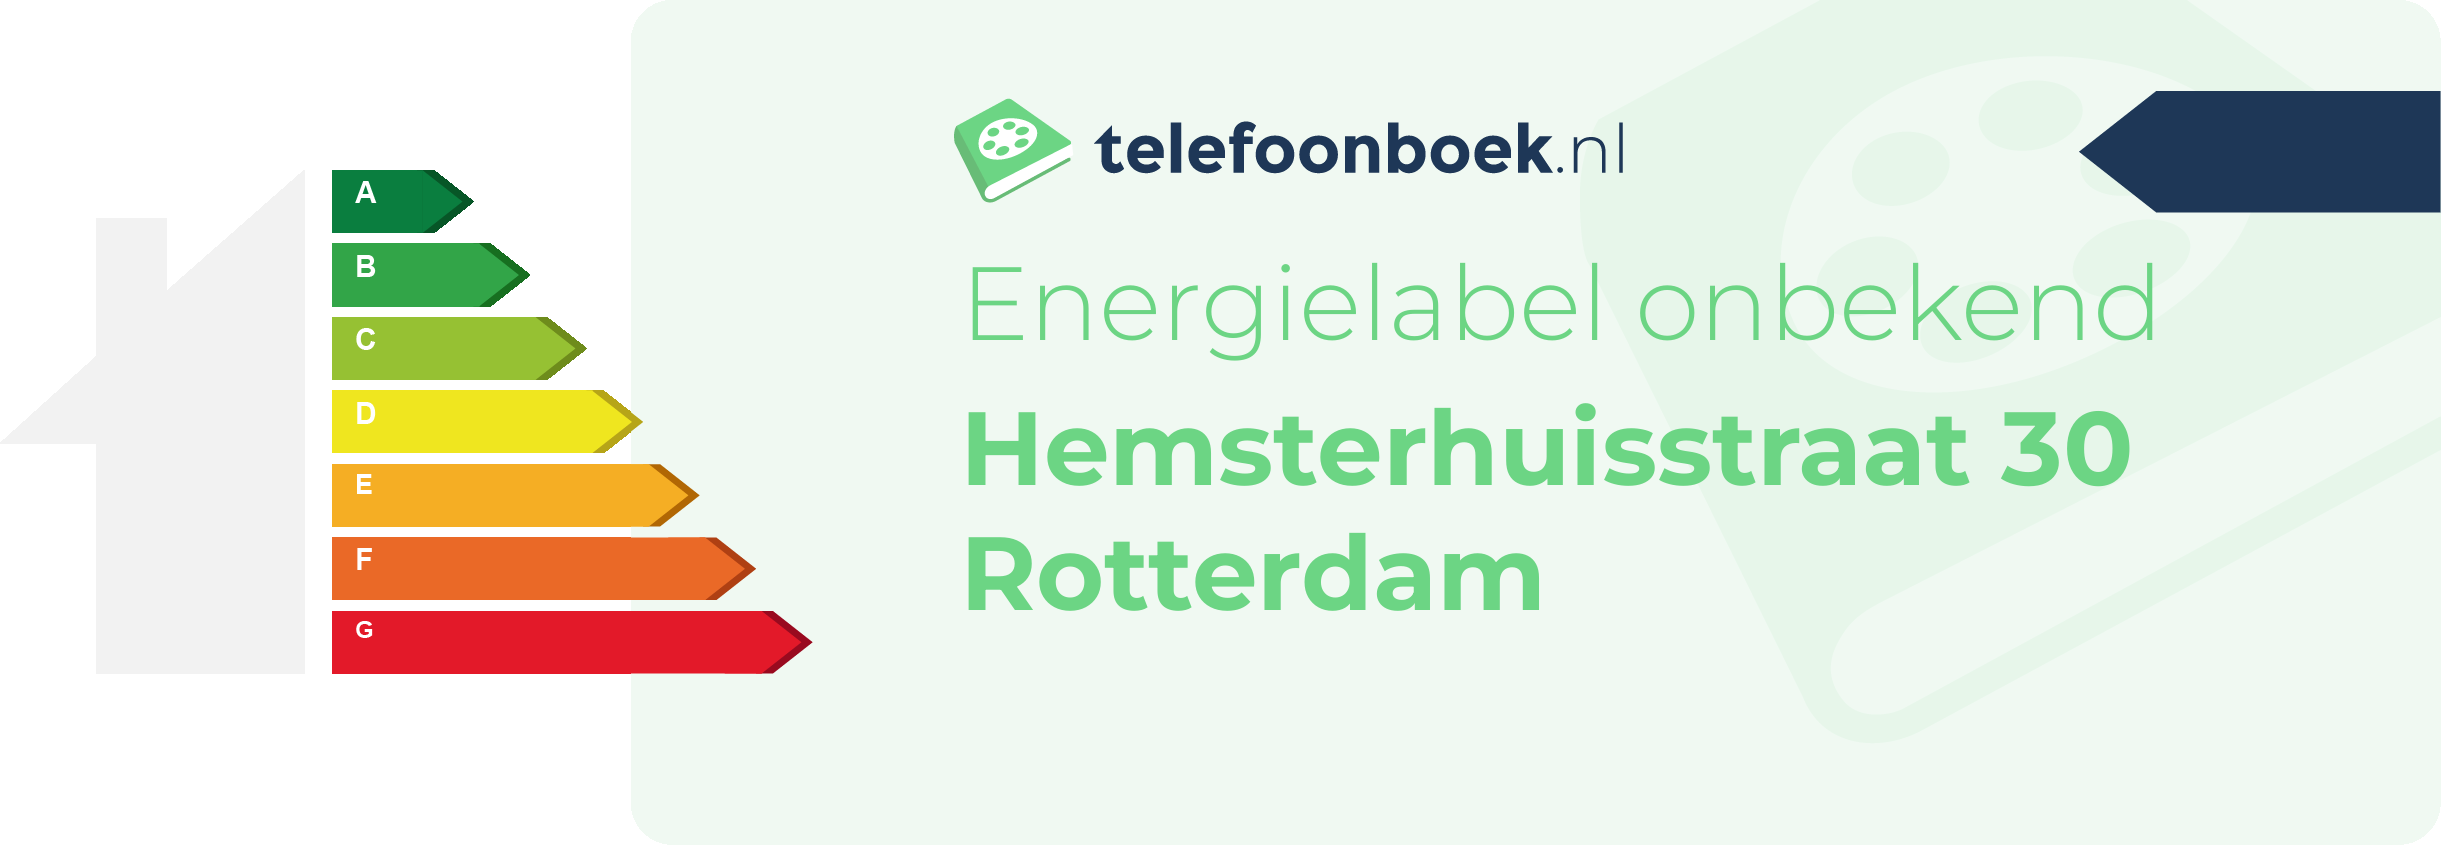 Energielabel Hemsterhuisstraat 30 Rotterdam